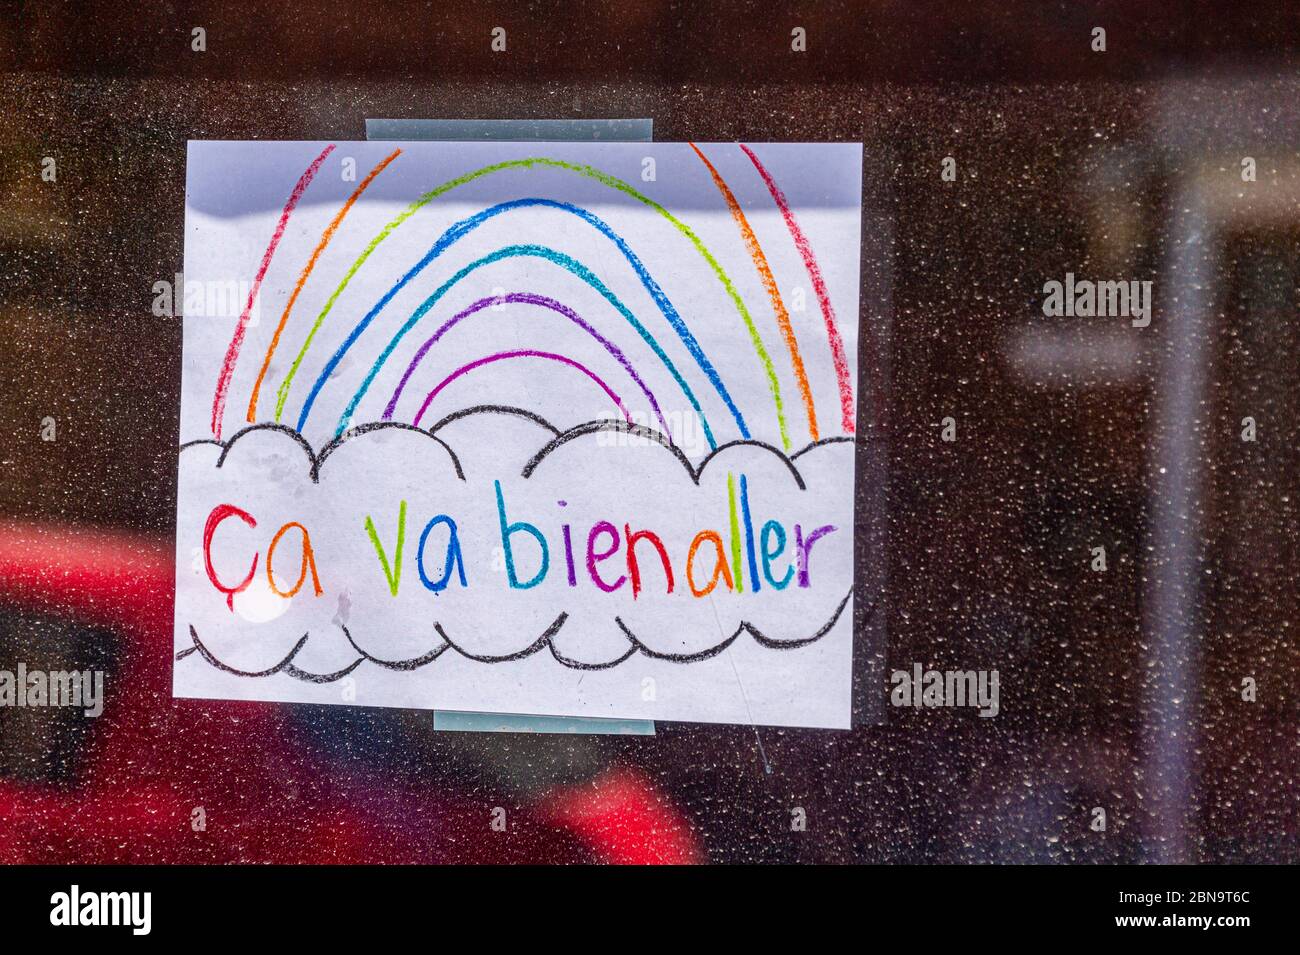 Montreal, CA - 13 de mayo de 2020: CA va bien aller (va a estar bien) mensaje y arco iris en un balcón durante la pandemia de Covid 19 Foto de stock